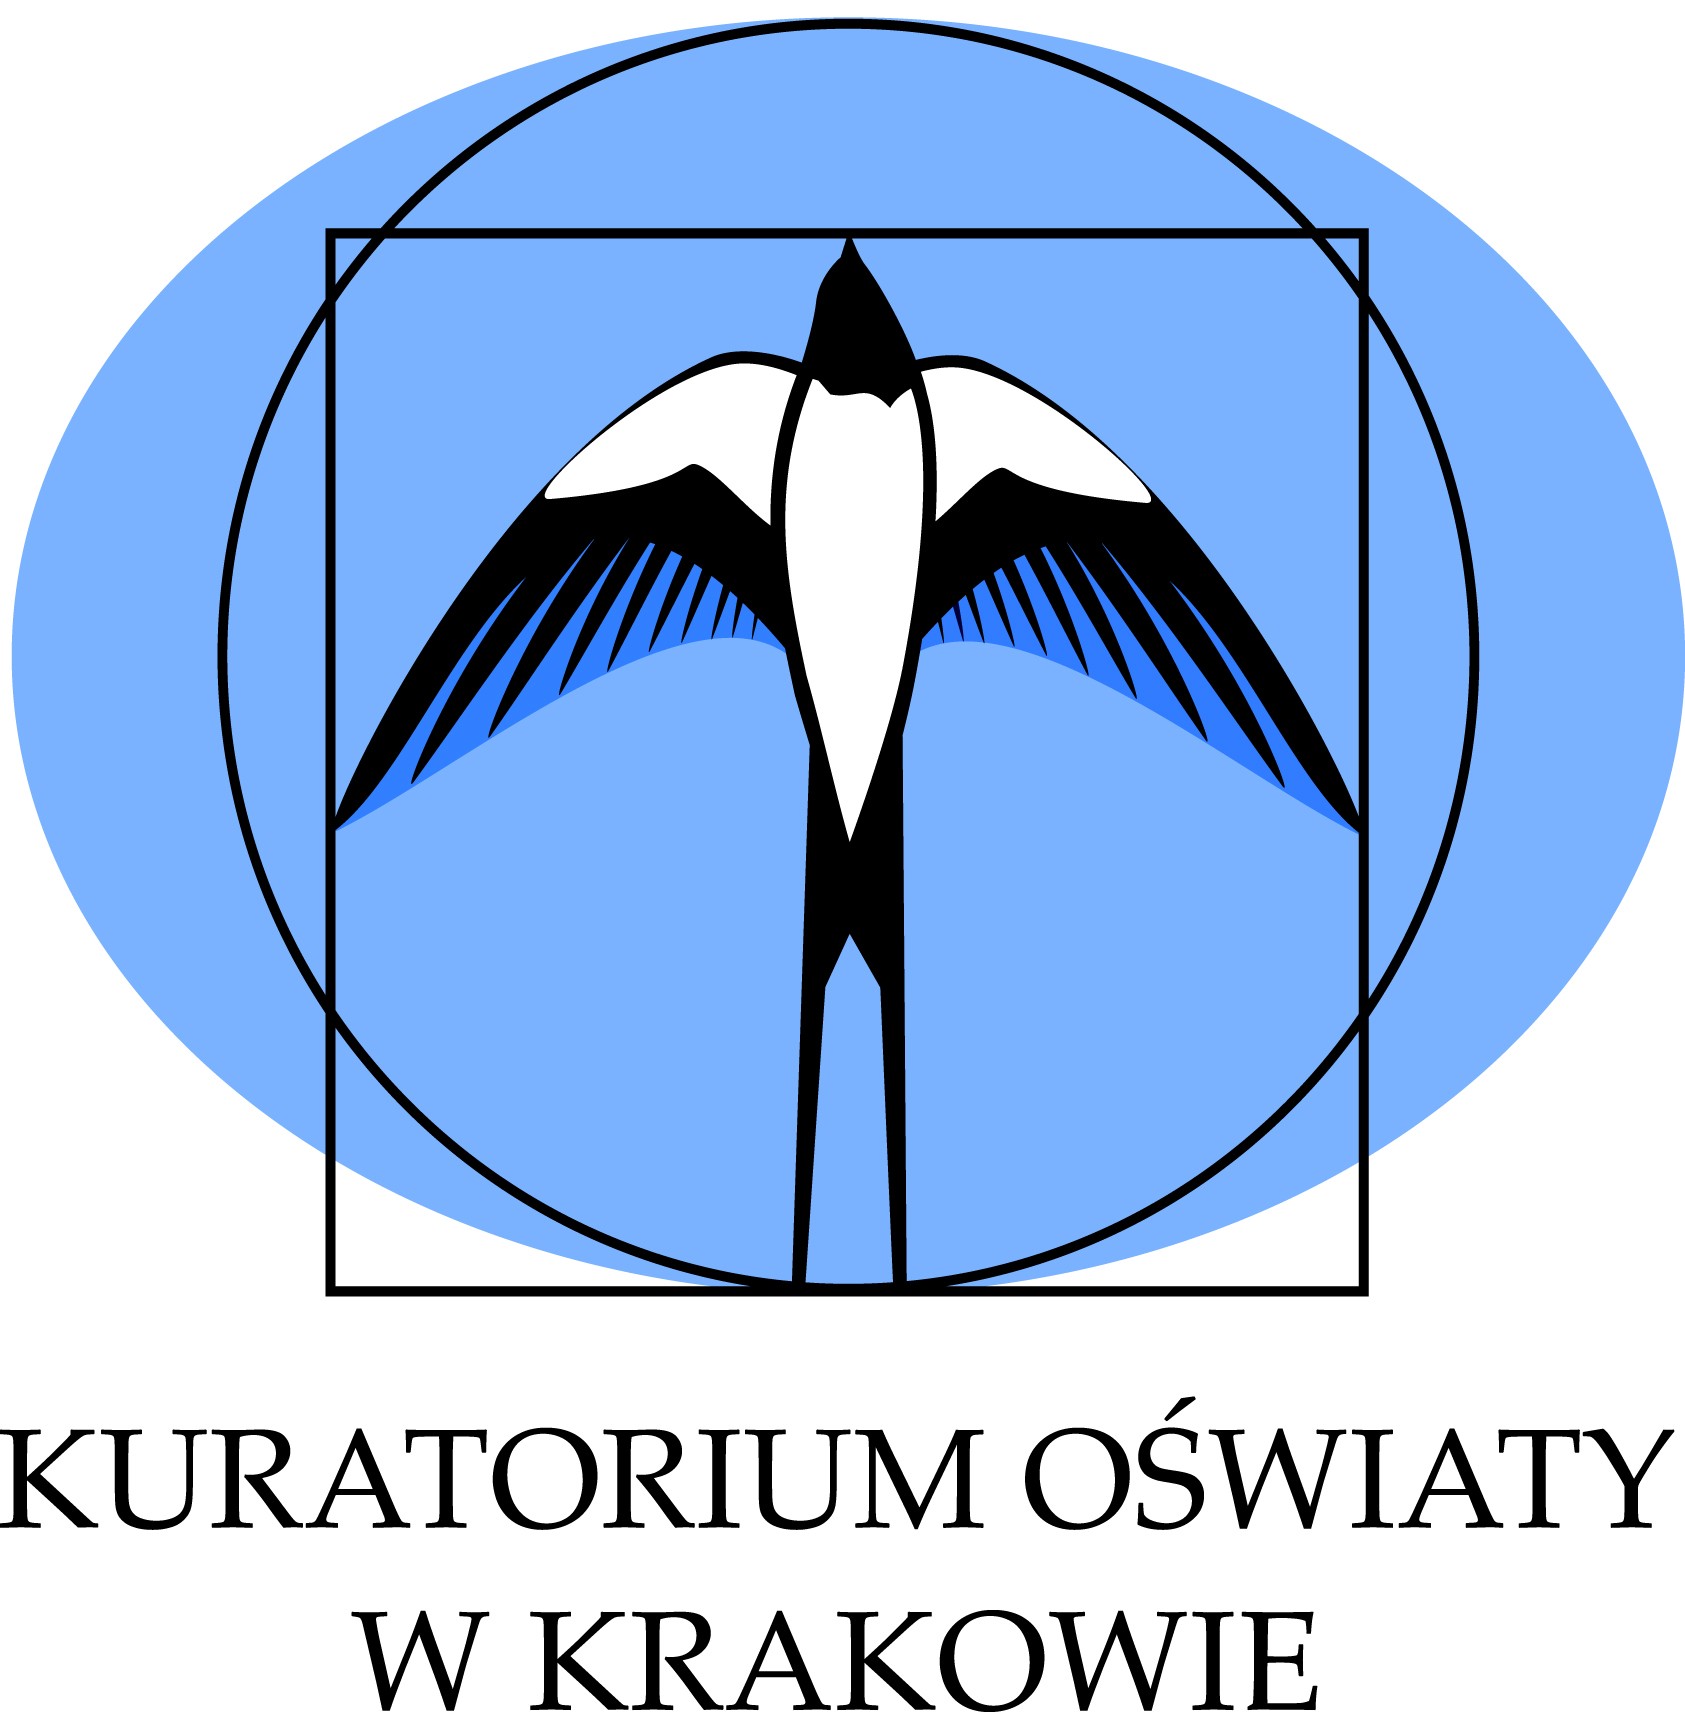 Kuratorium Oswiaty w Krakowie